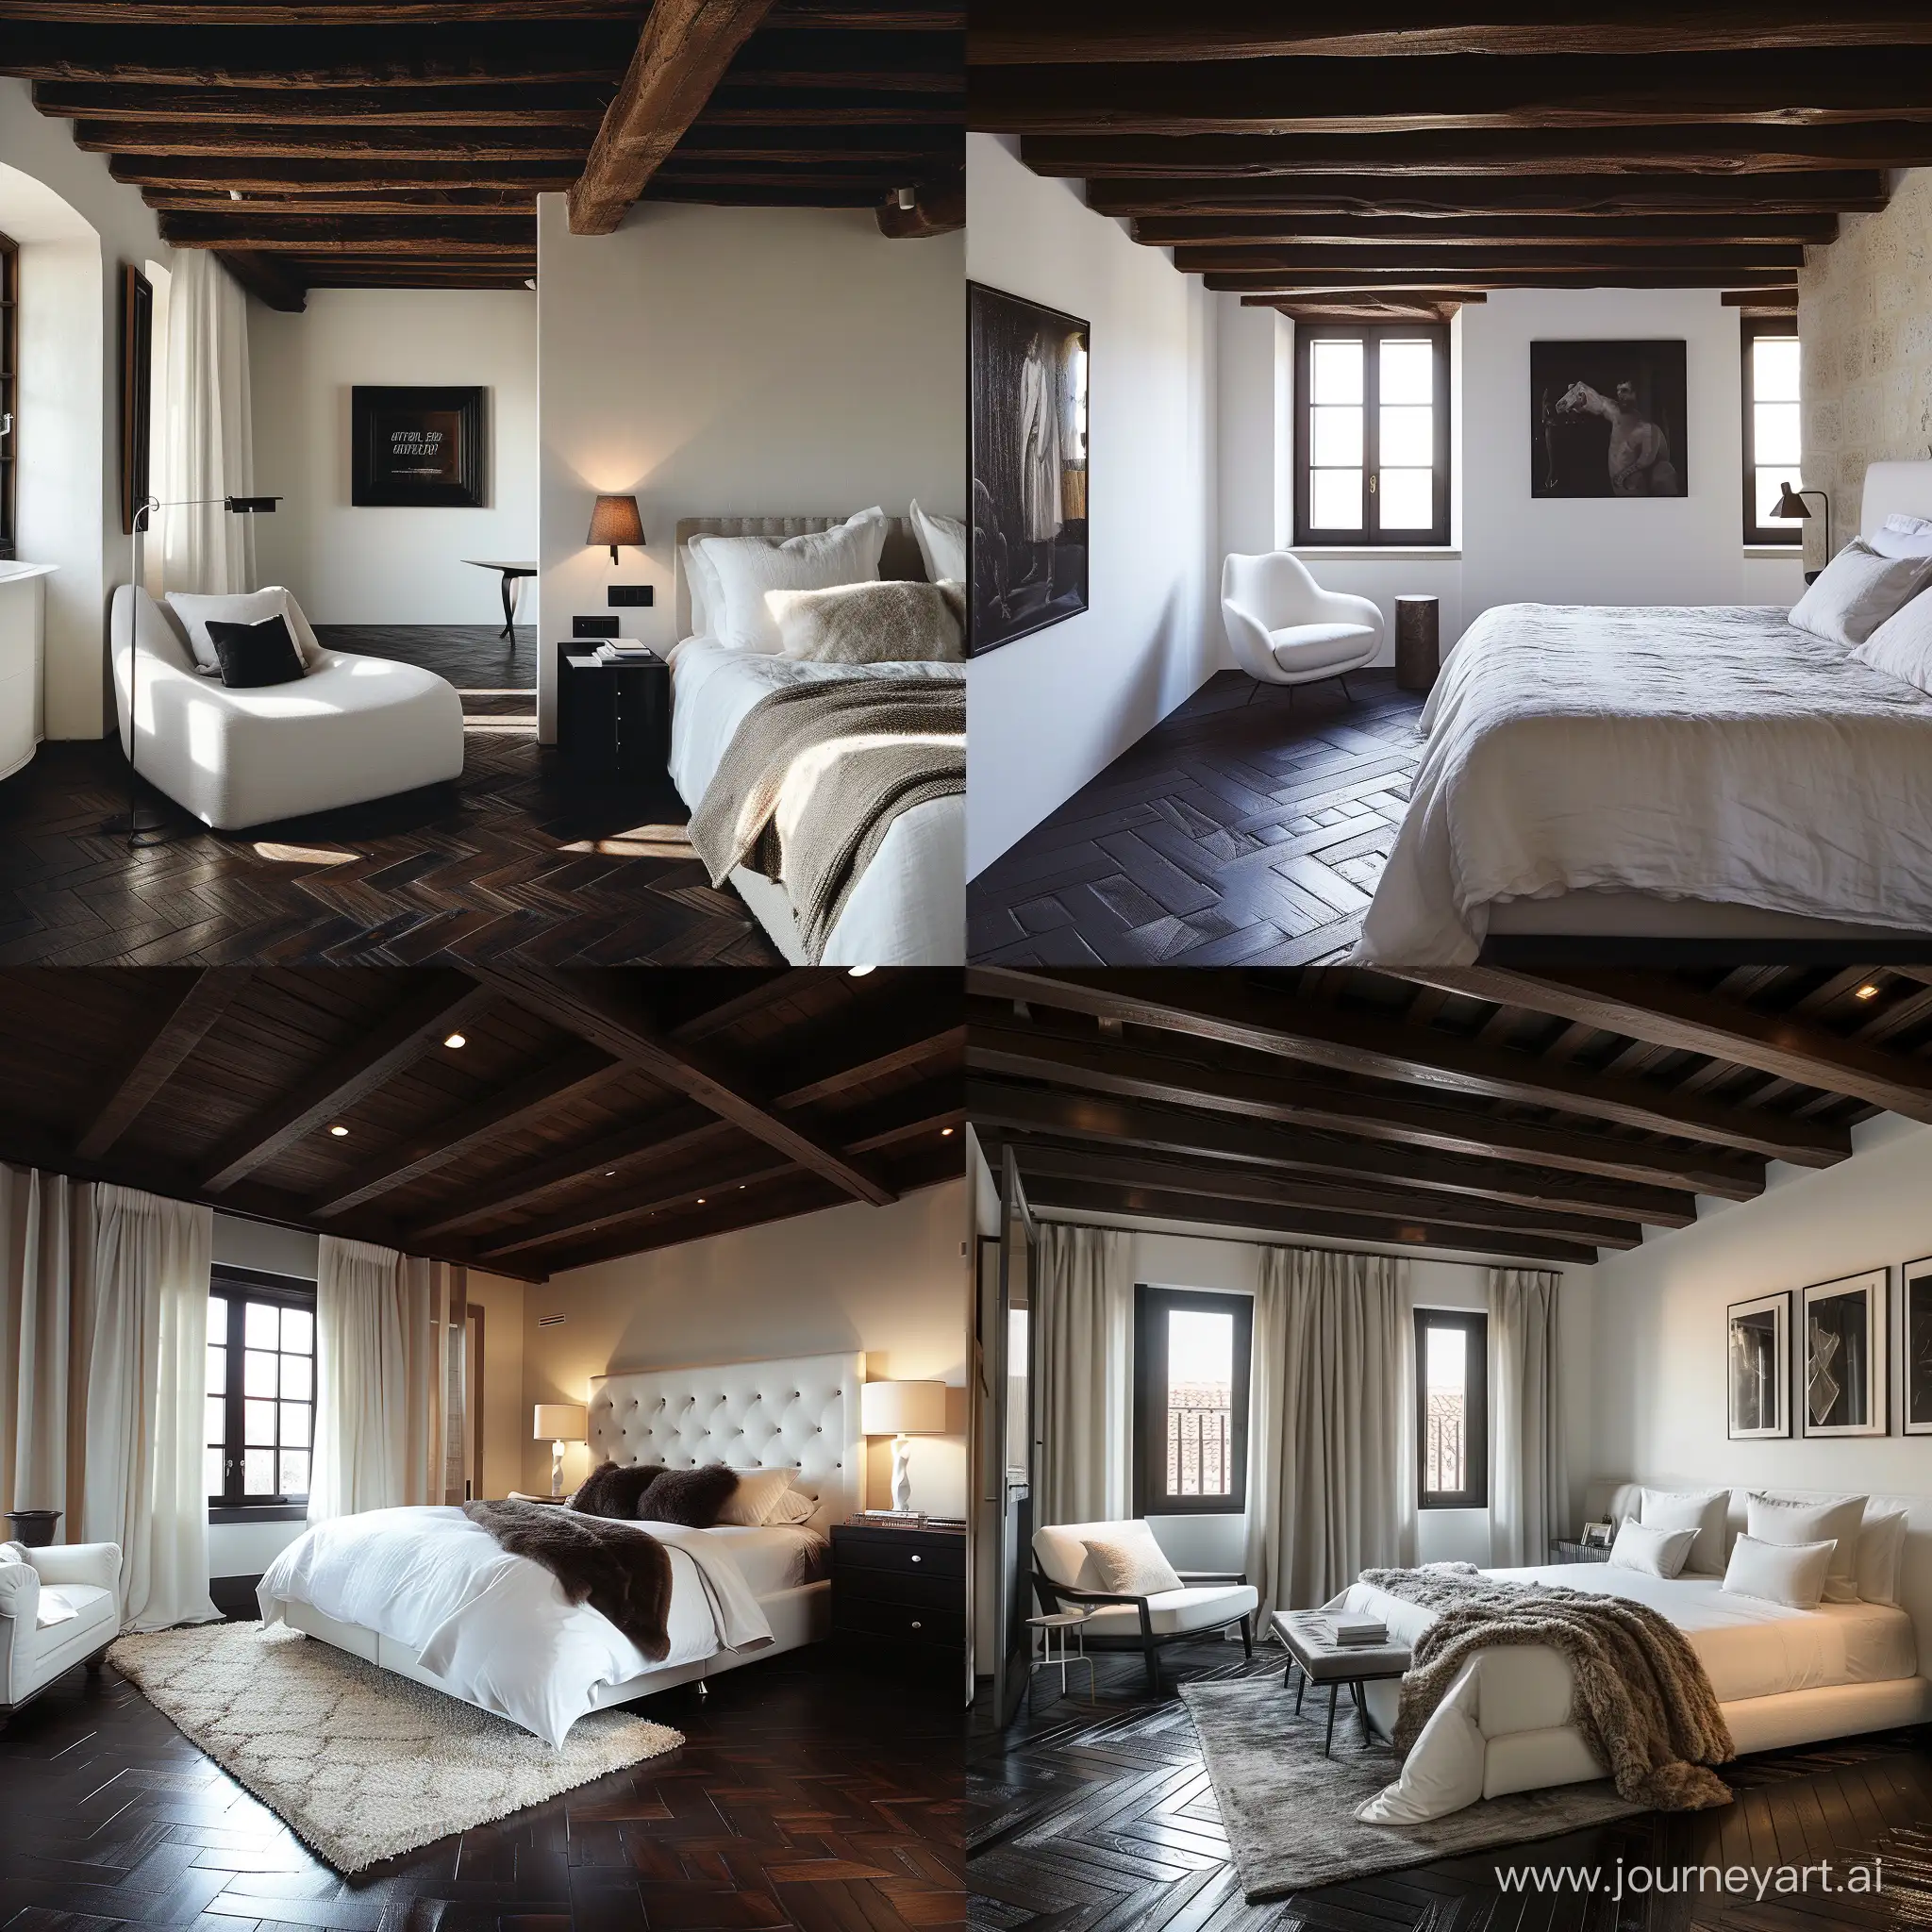 Dettaglio di una camera da letto soffitto travi di legno scuro arredamento moderno soft White pavimento parquet scuro 